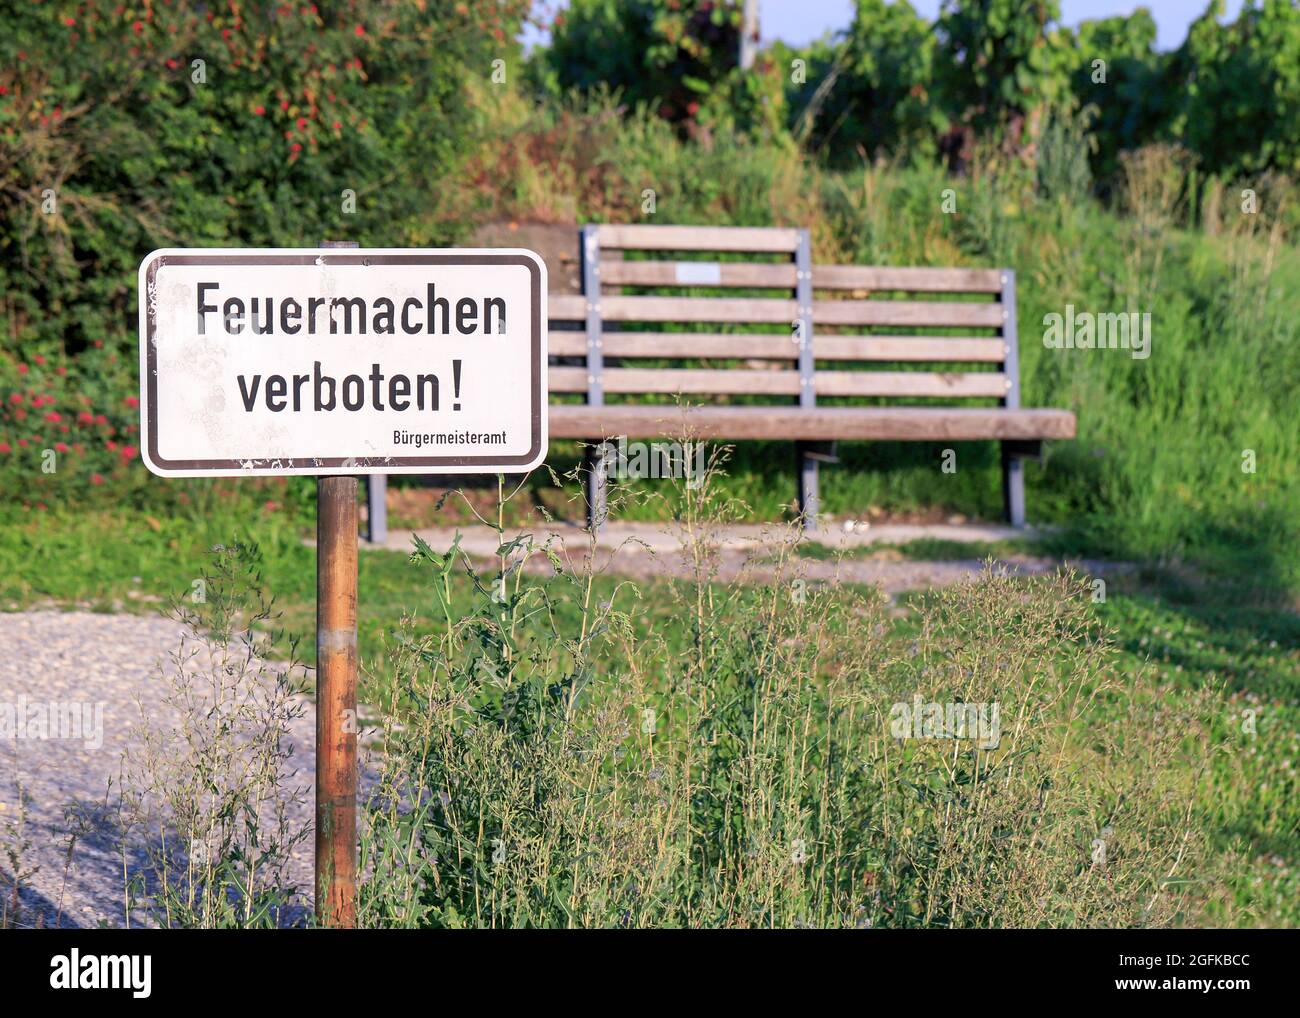 Feuermachen verboten Hinweisschild vor einer Holzbank in einem Weinberg in Besigheim, Baden-Württemberg, Germania Foto Stock